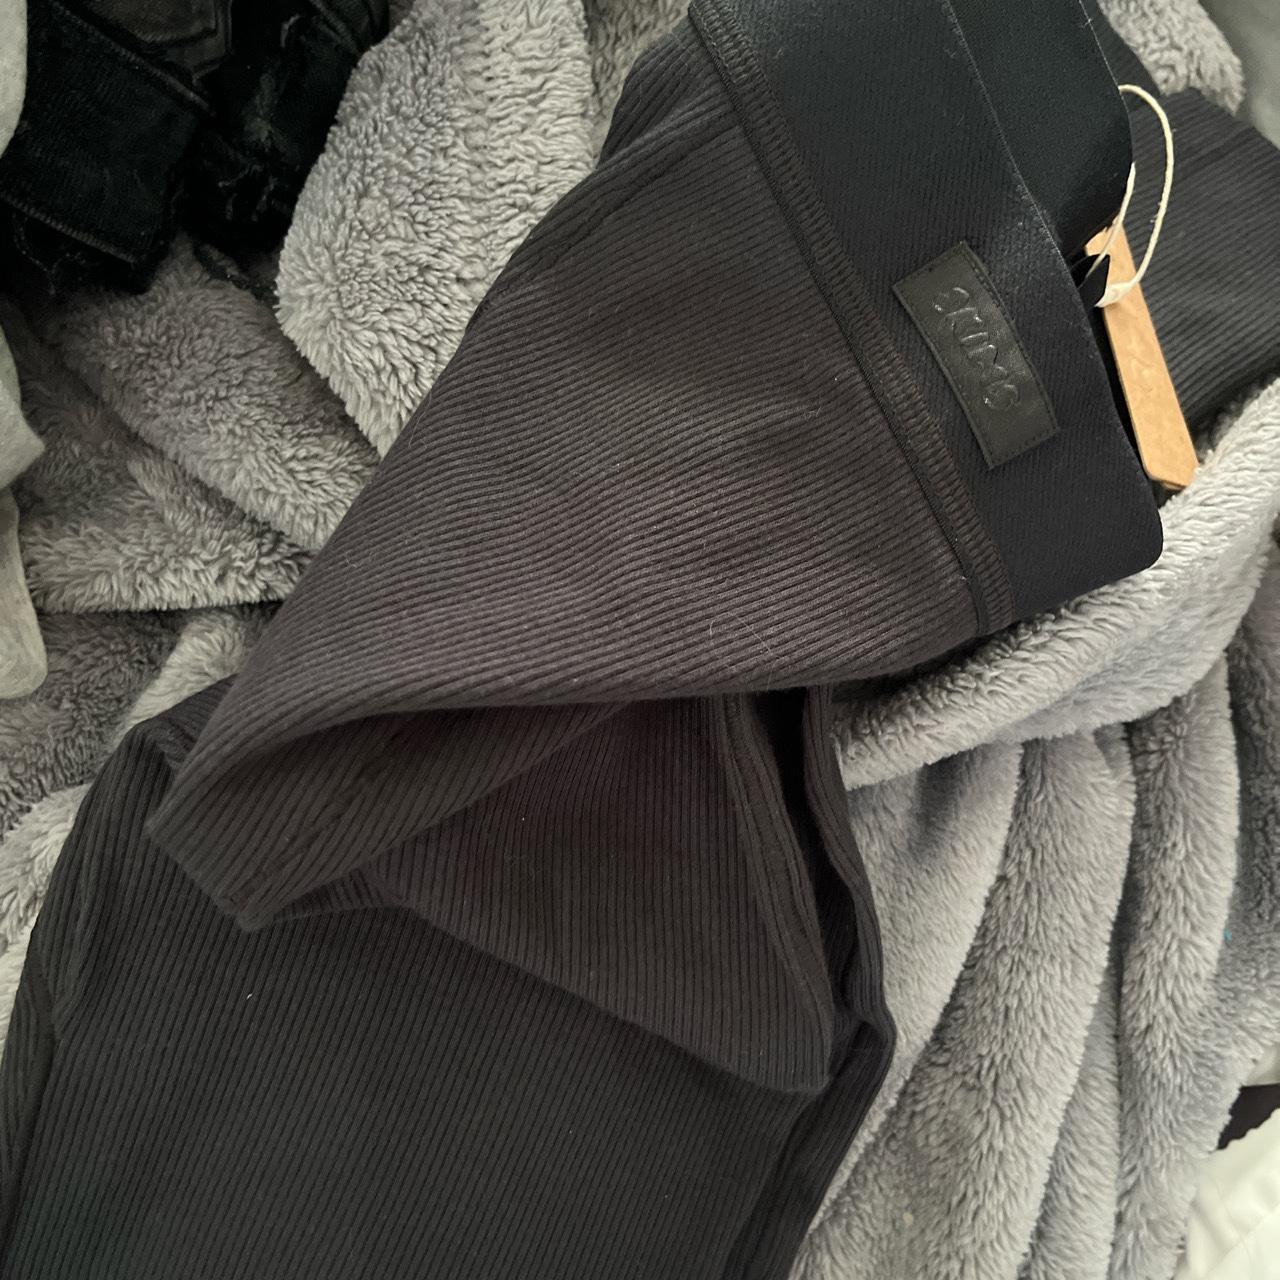 Skims black thermal leggings in color soot Very - Depop